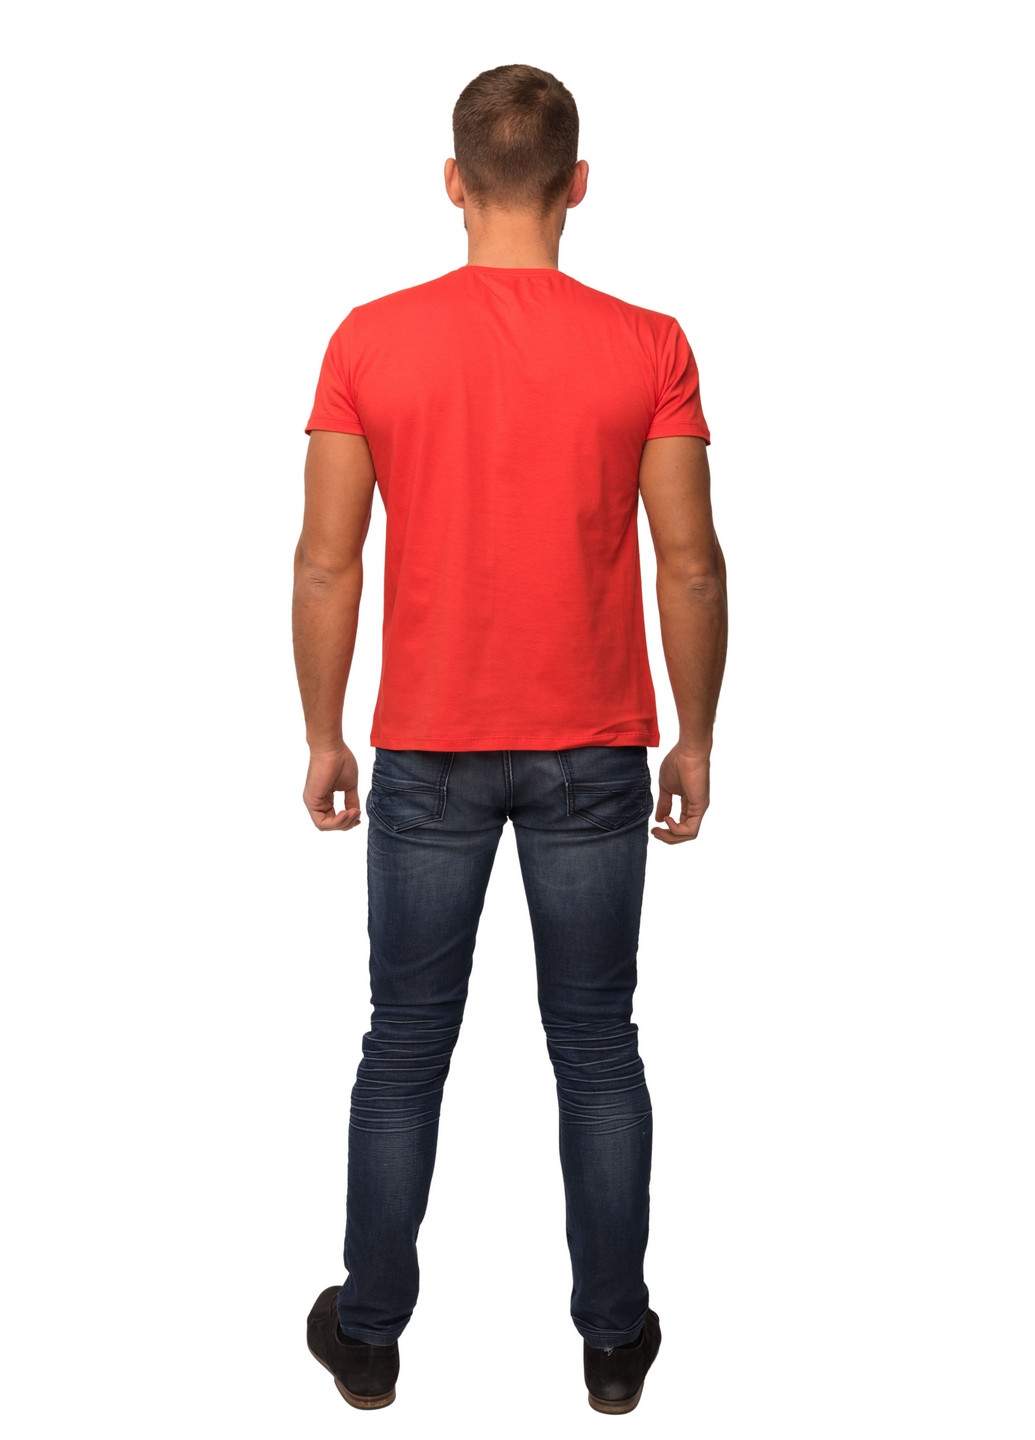 Красная футболка мужская Наталюкс 11-1312